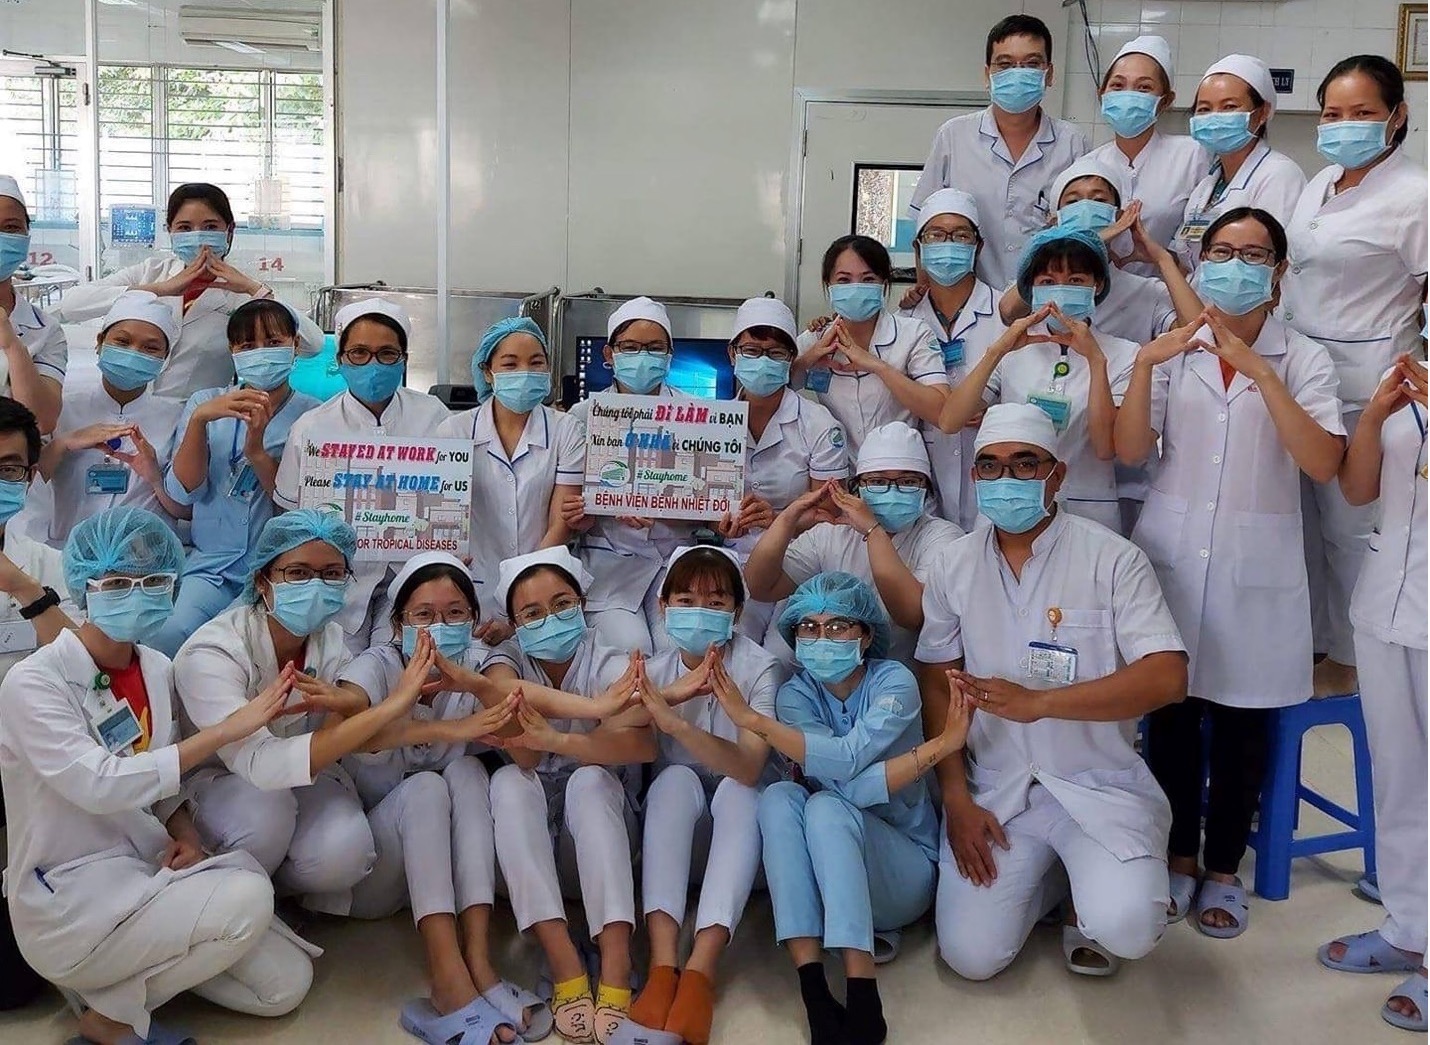 IND Case Study 2021: Viet Nam Nurses Respond to SARS